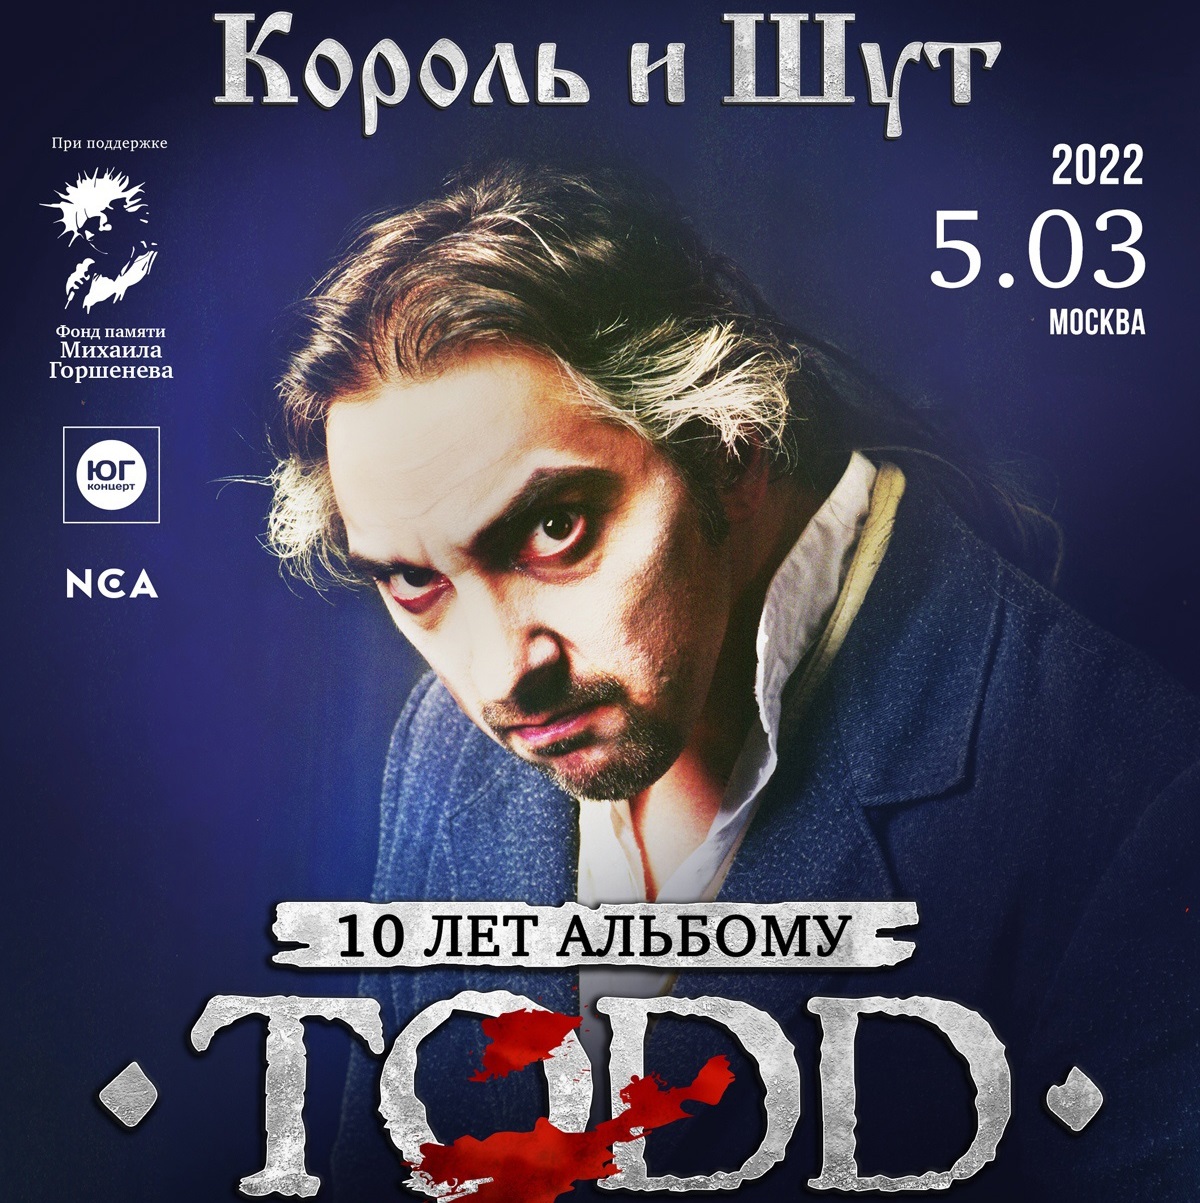 Северный Флот и Алексей Горшенёв отметили 10-летие альбома Короля и Шута "TODD"